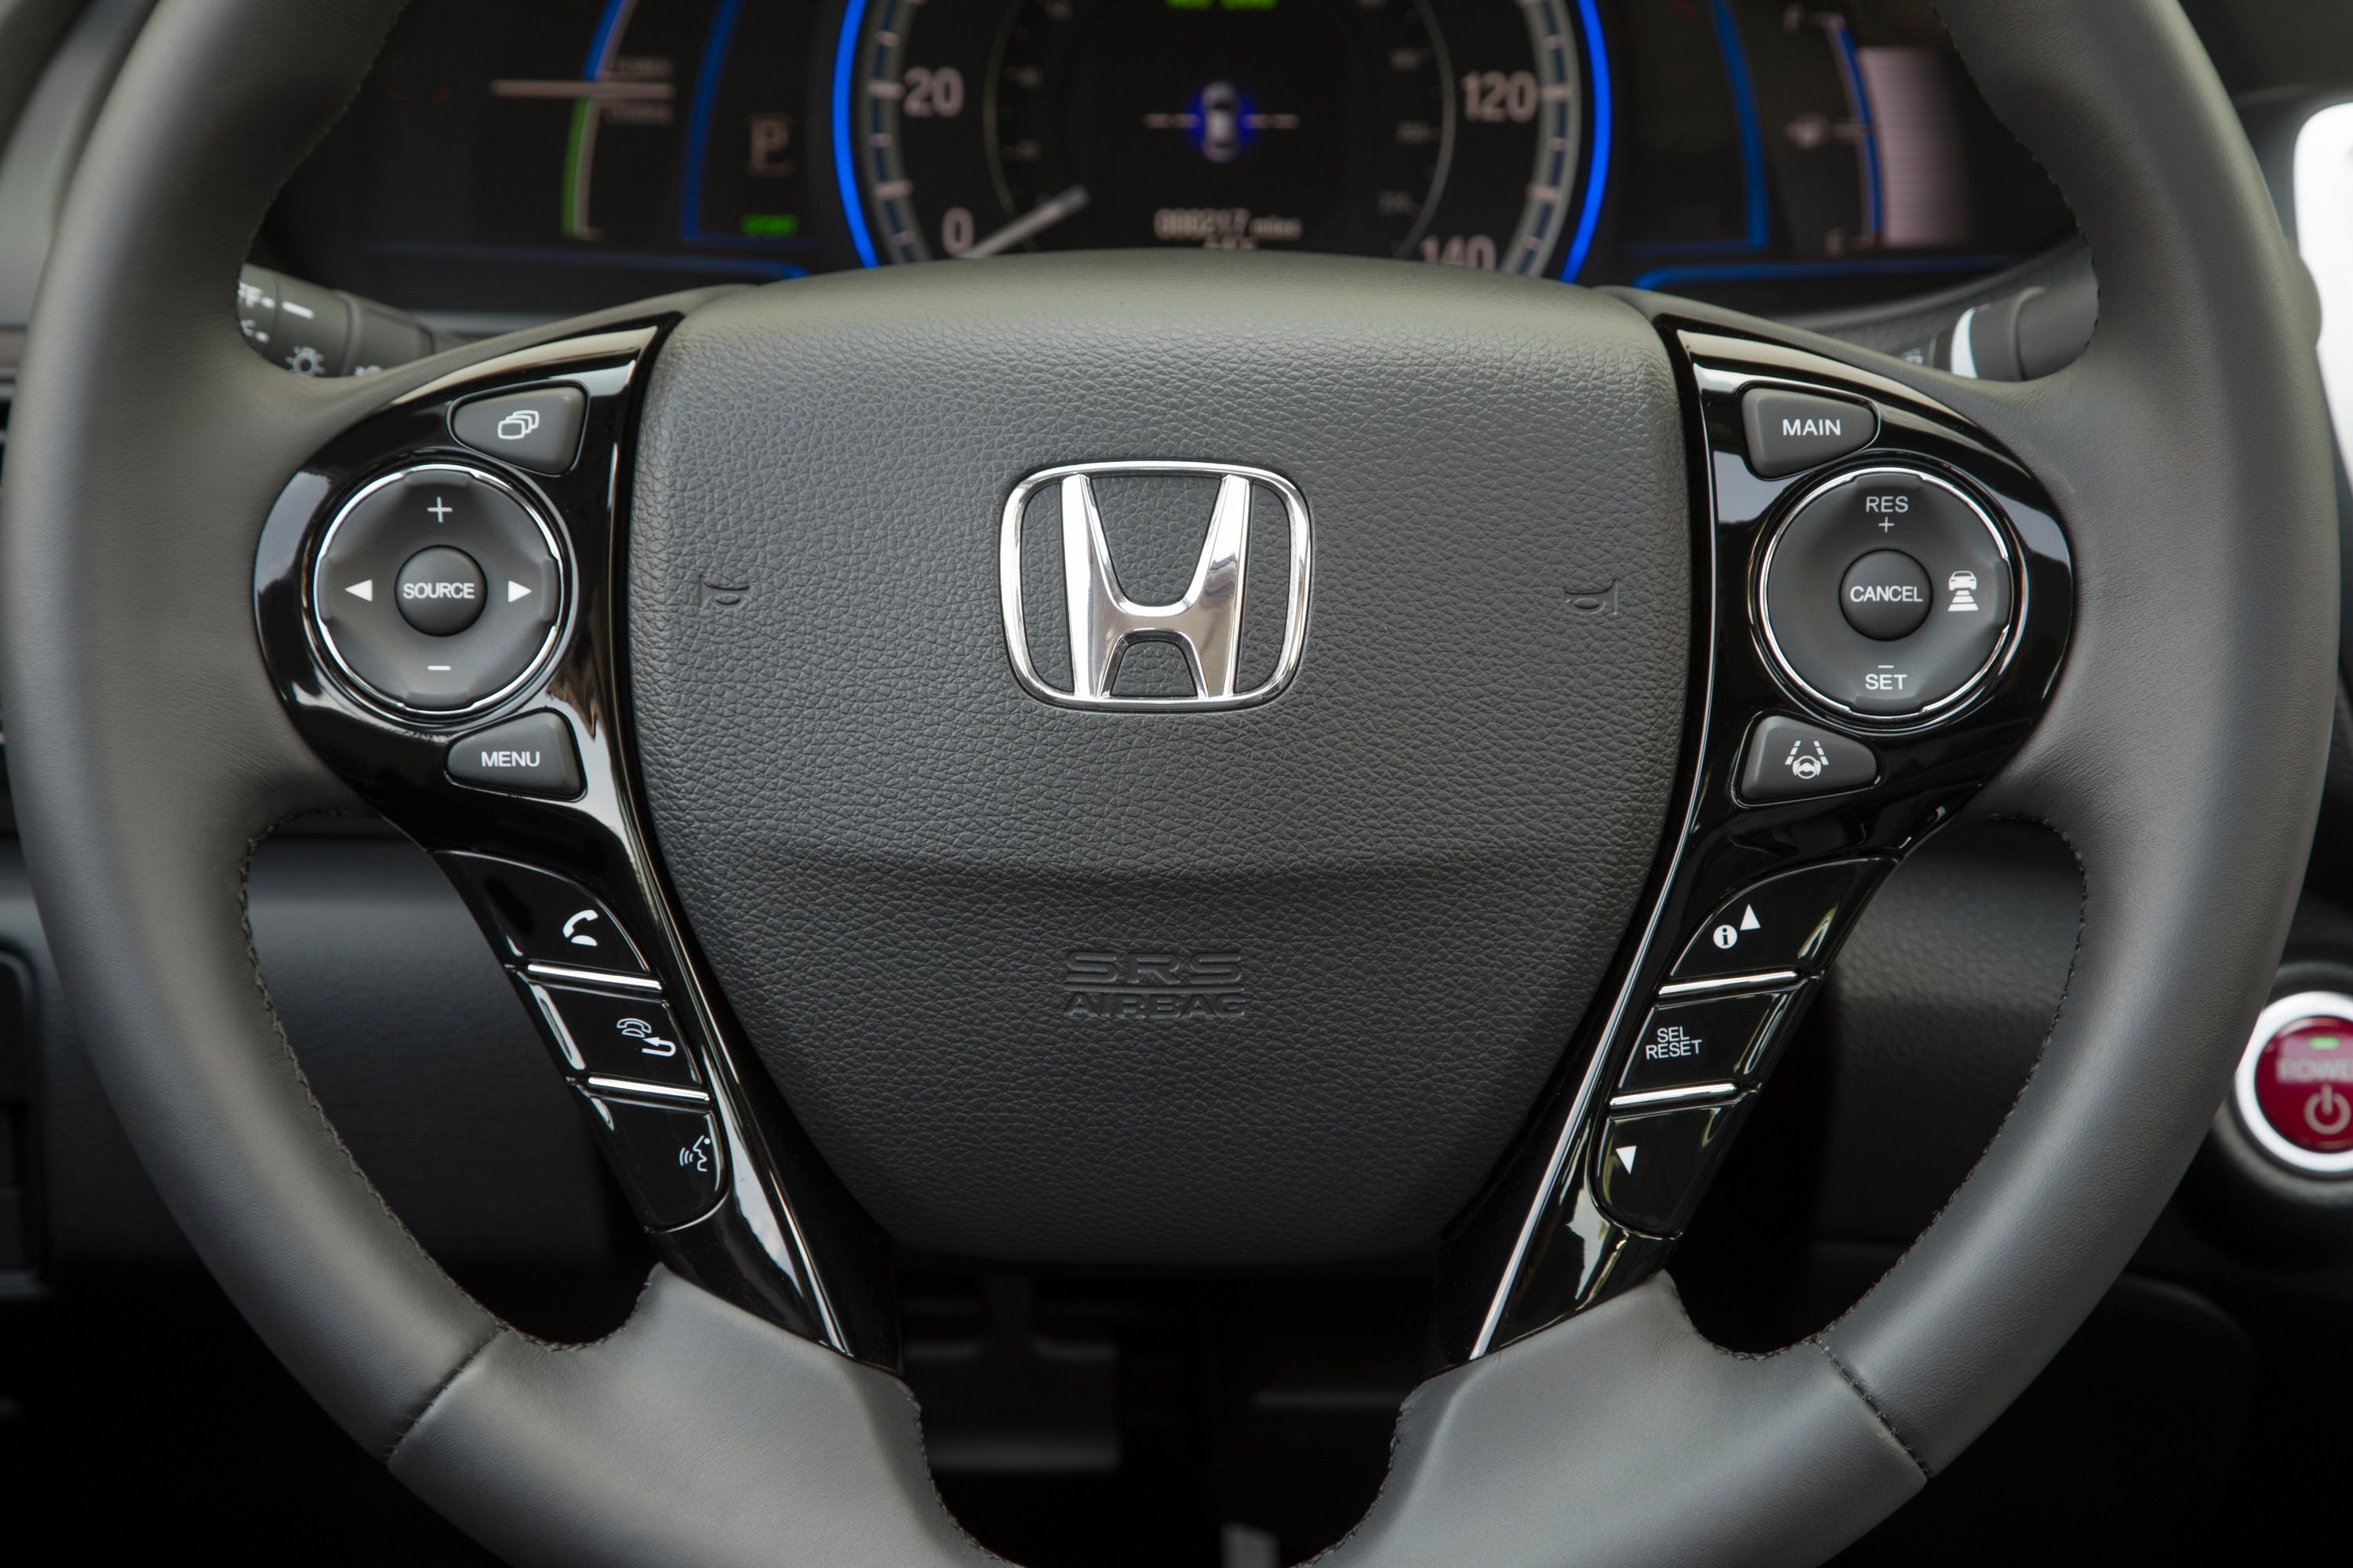 2017 Honda Accord Hybrid